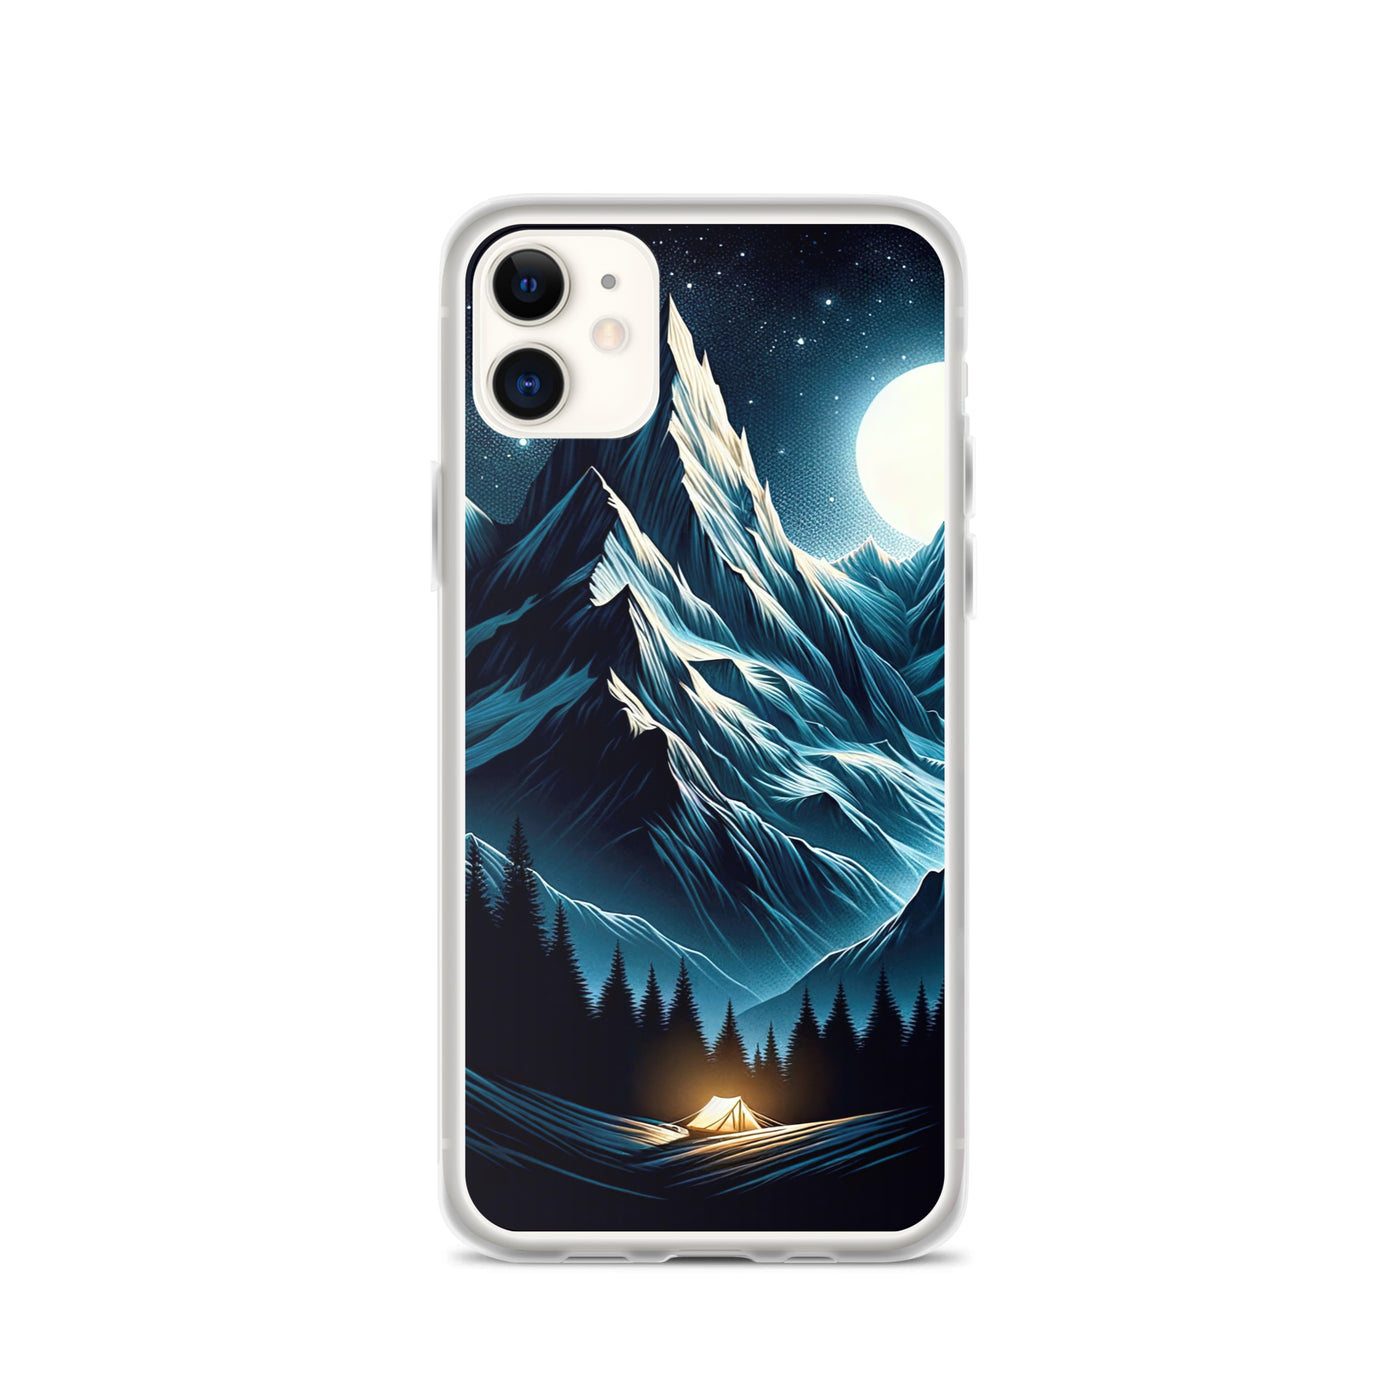 Alpennacht mit Zelt: Mondglanz auf Gipfeln und Tälern, sternenklarer Himmel - iPhone Schutzhülle (durchsichtig) berge xxx yyy zzz iPhone 11